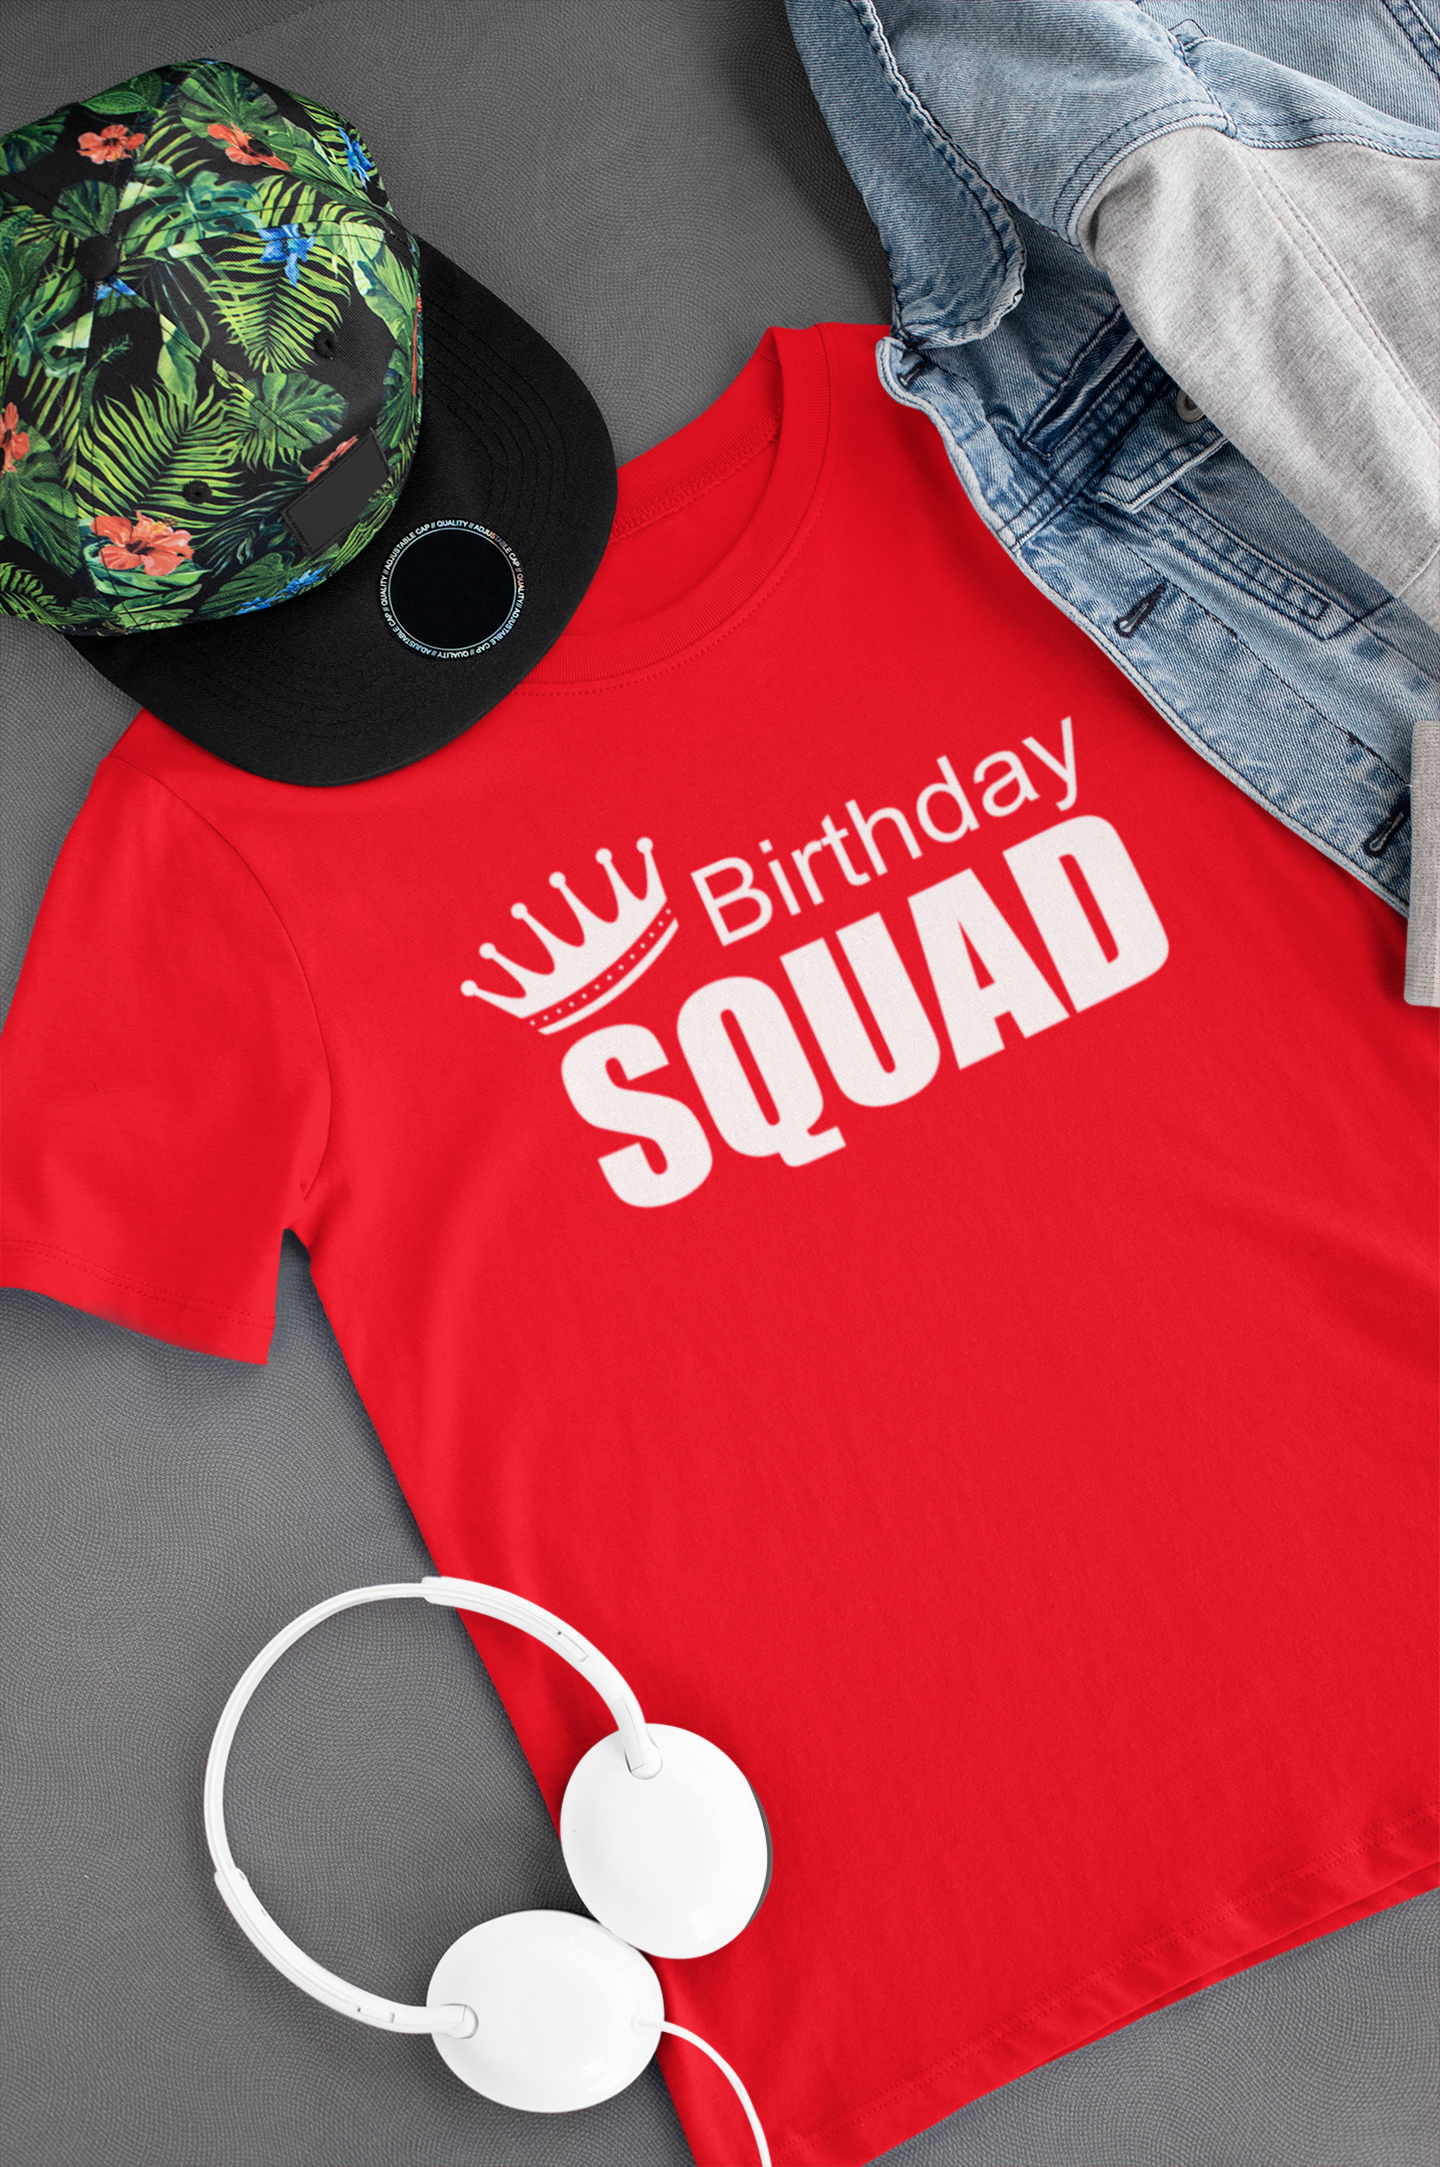 mens birthday squad shirt